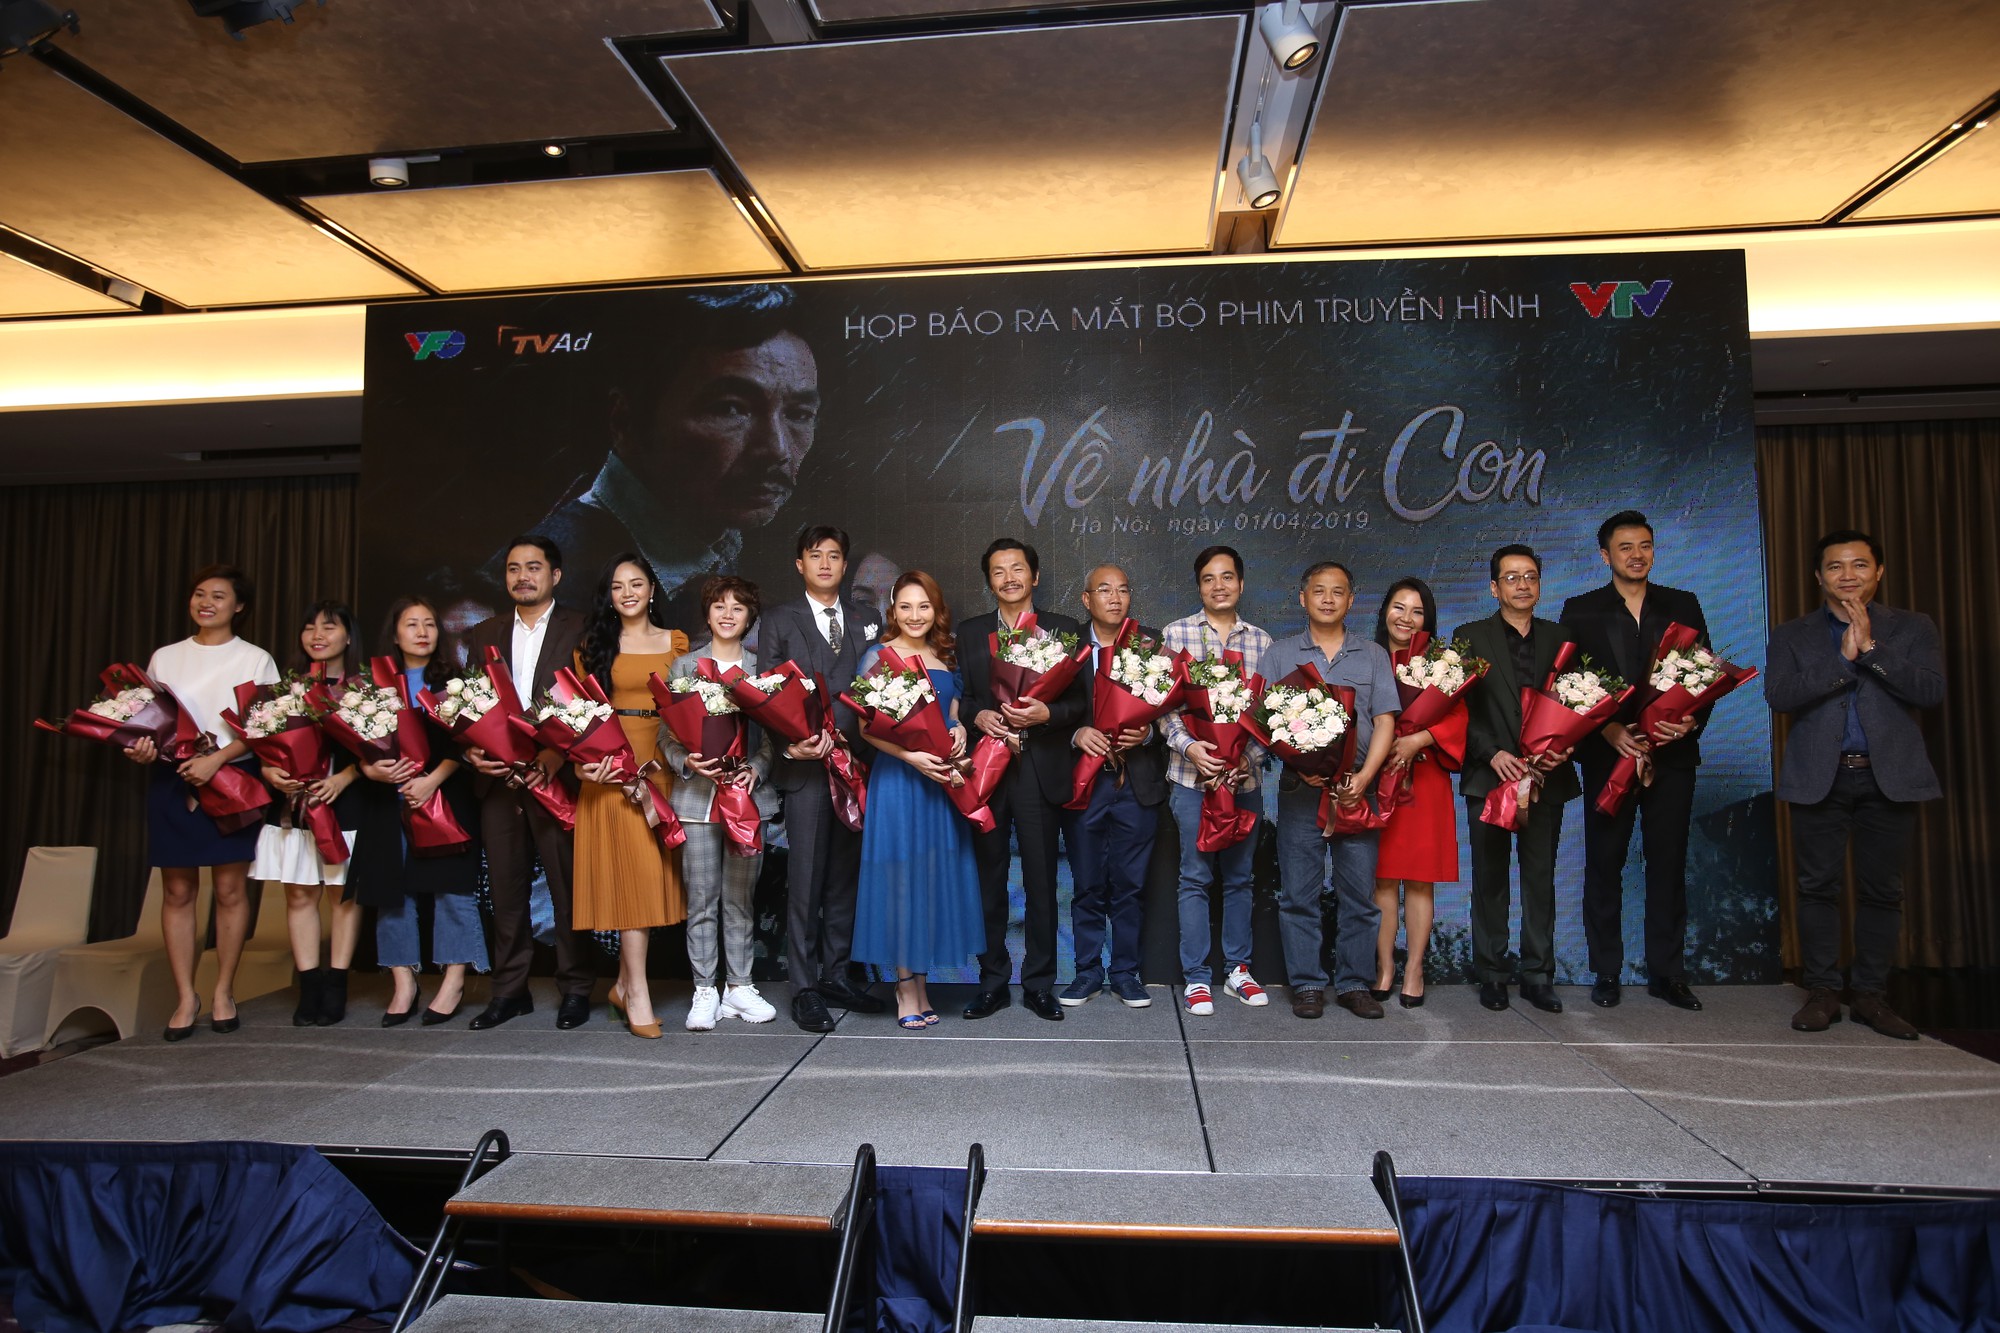 Về nhà đi con: Bộ phim quốc dân và hành trình làm nên những điều chưa từng có trong lịch sử phim truyền hình Việt-30